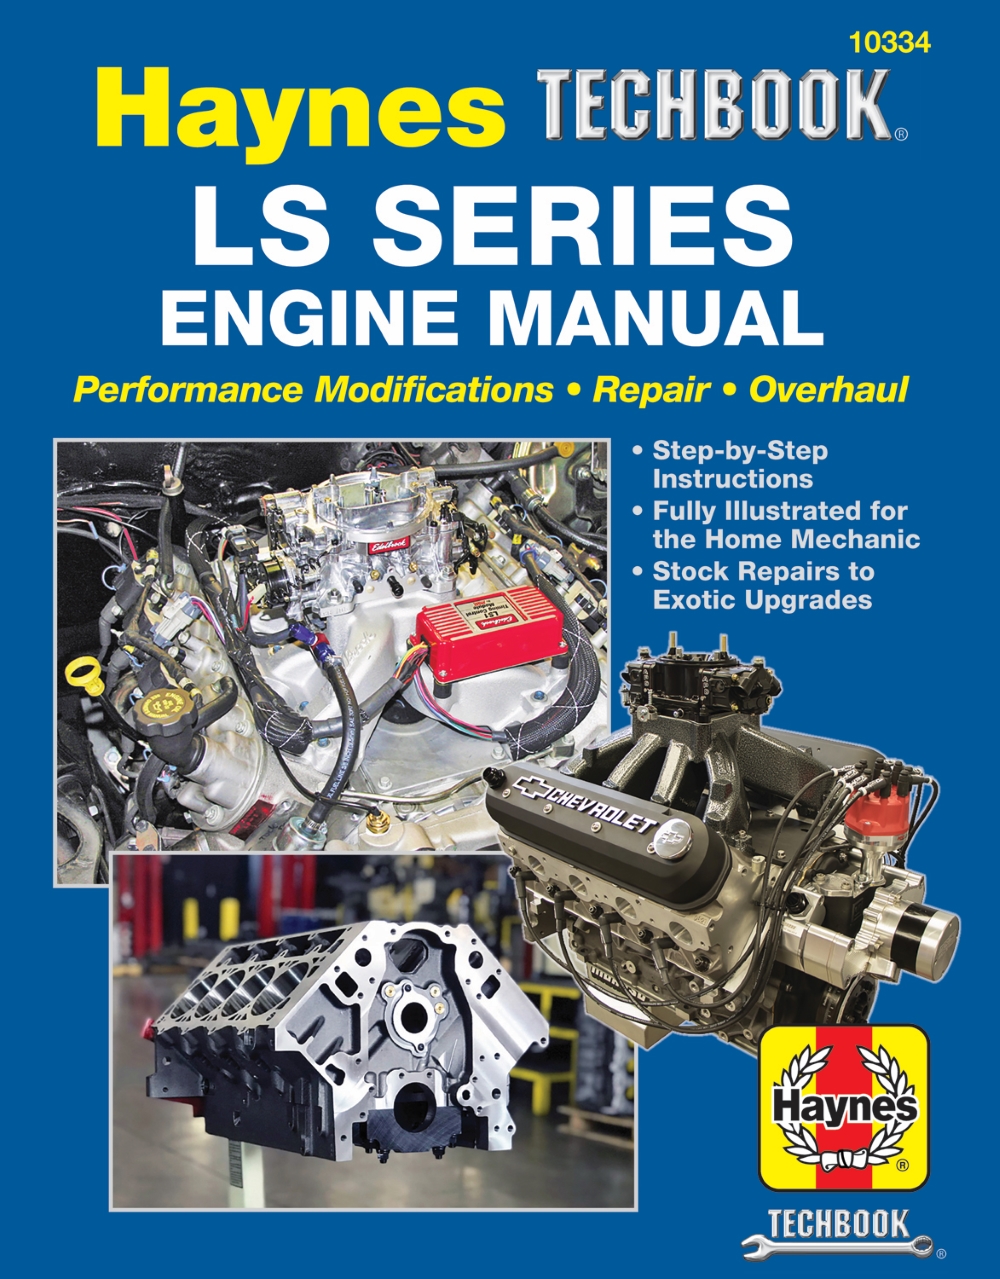 LS Series Manual